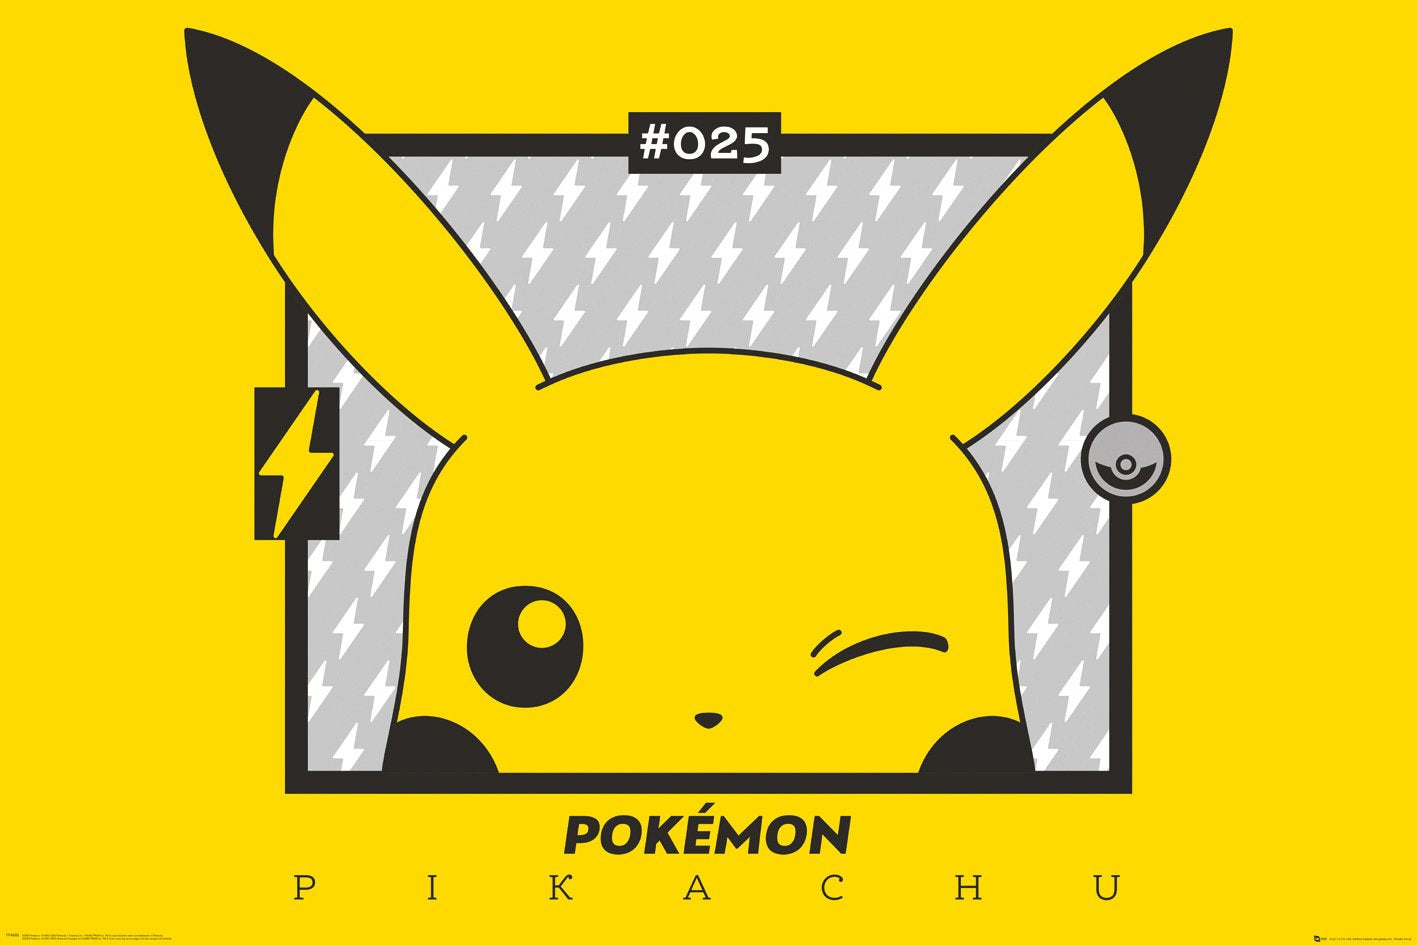 Pokemon (Pikachu Winking) Poster